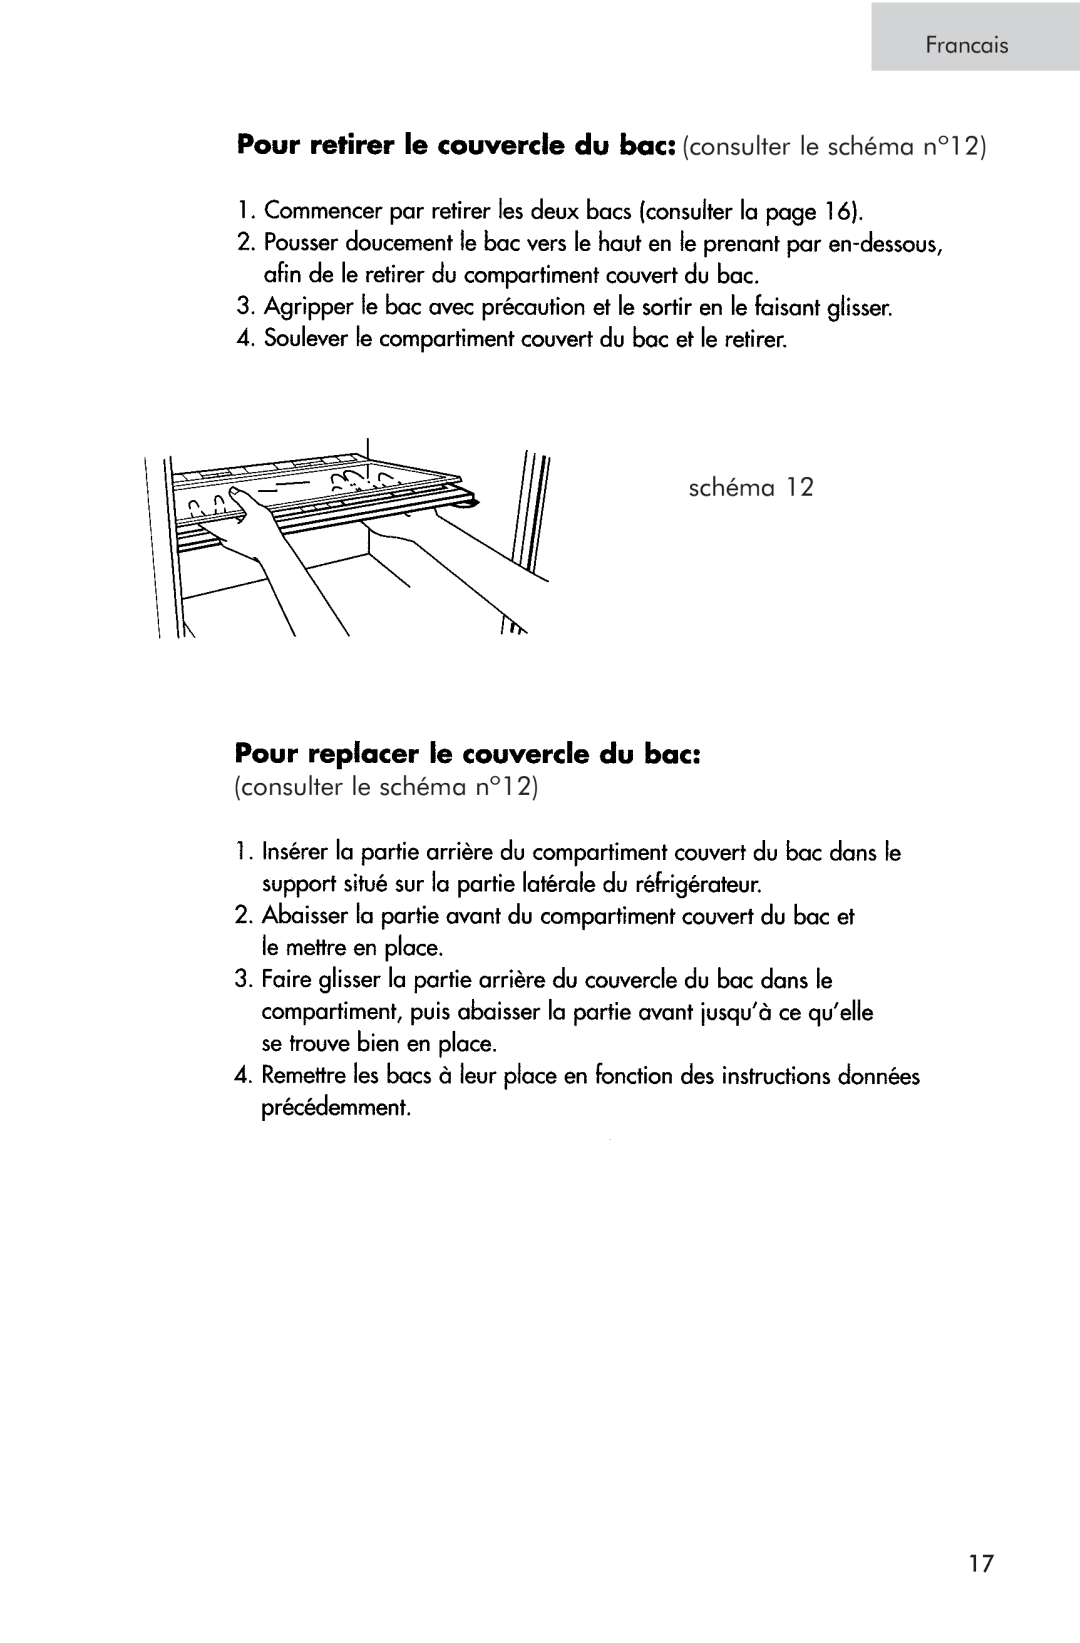 Haier RRTG, PRTS manual consulter le schéma nº12 schéma, Francais 